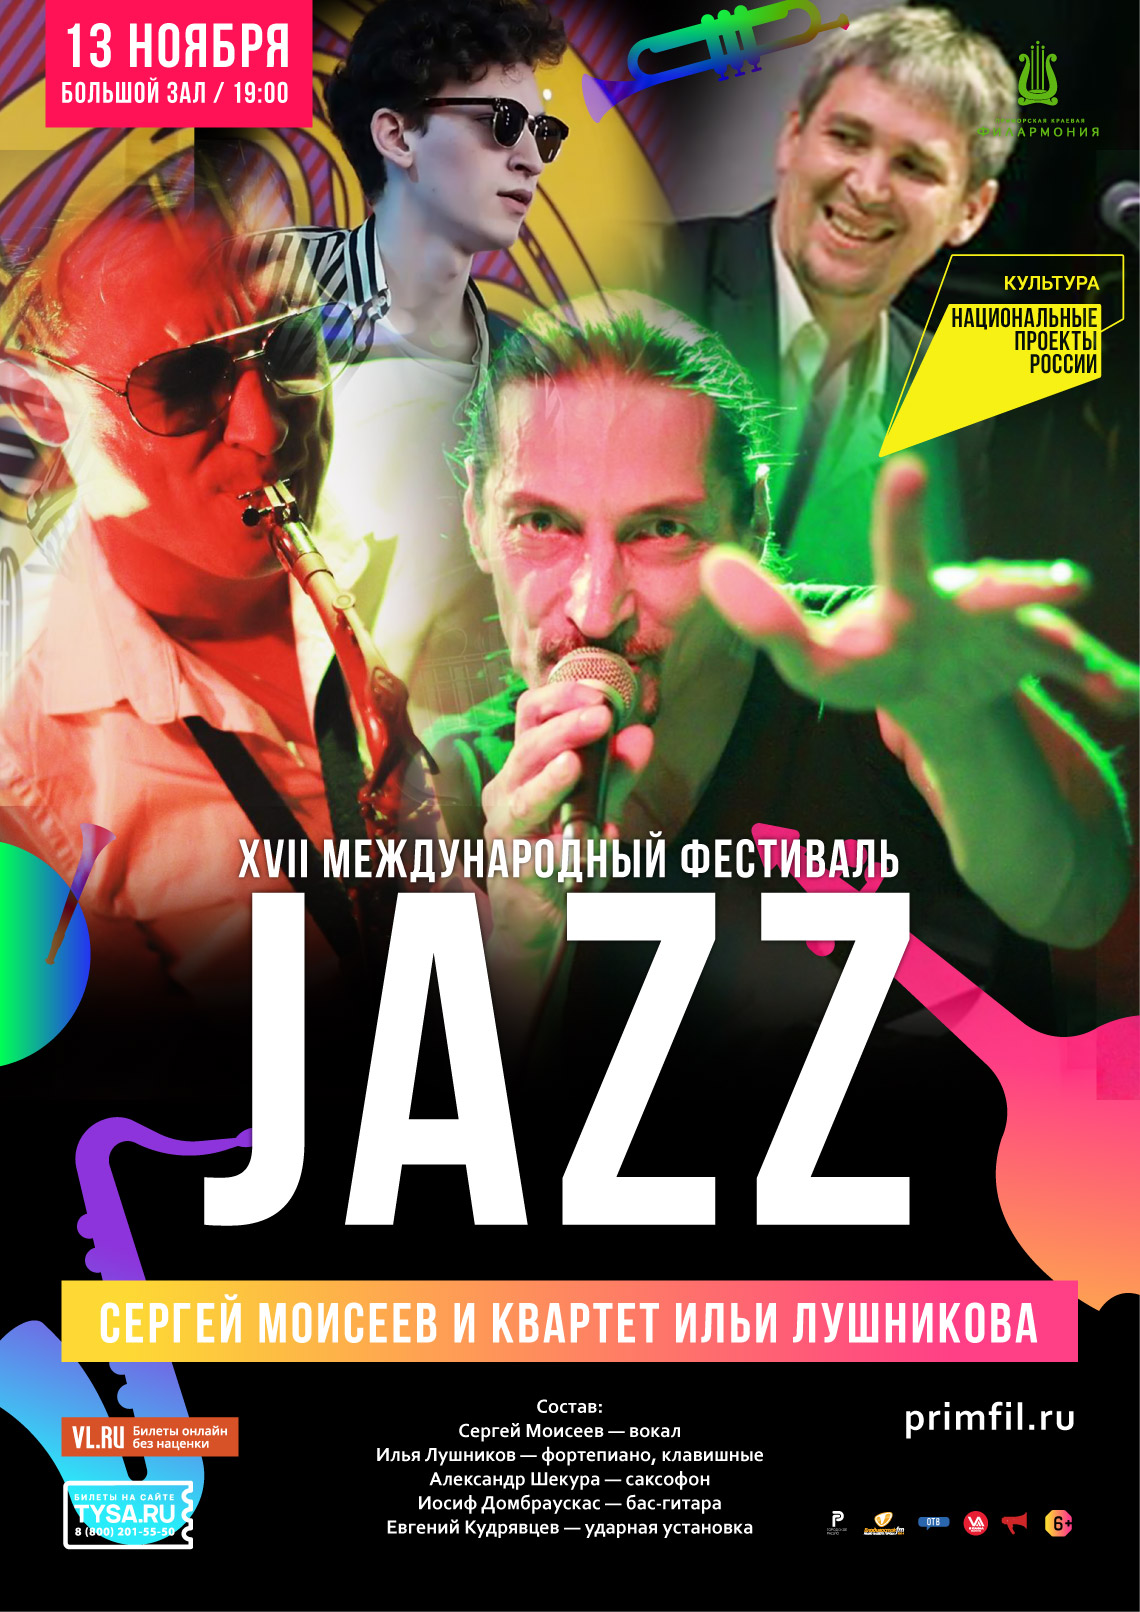 13 ноября XVII Международный Джазовый фестиваль во Владивостоке Квартет Ильи Лушникова и Сергей Моисеев (Владивосток)